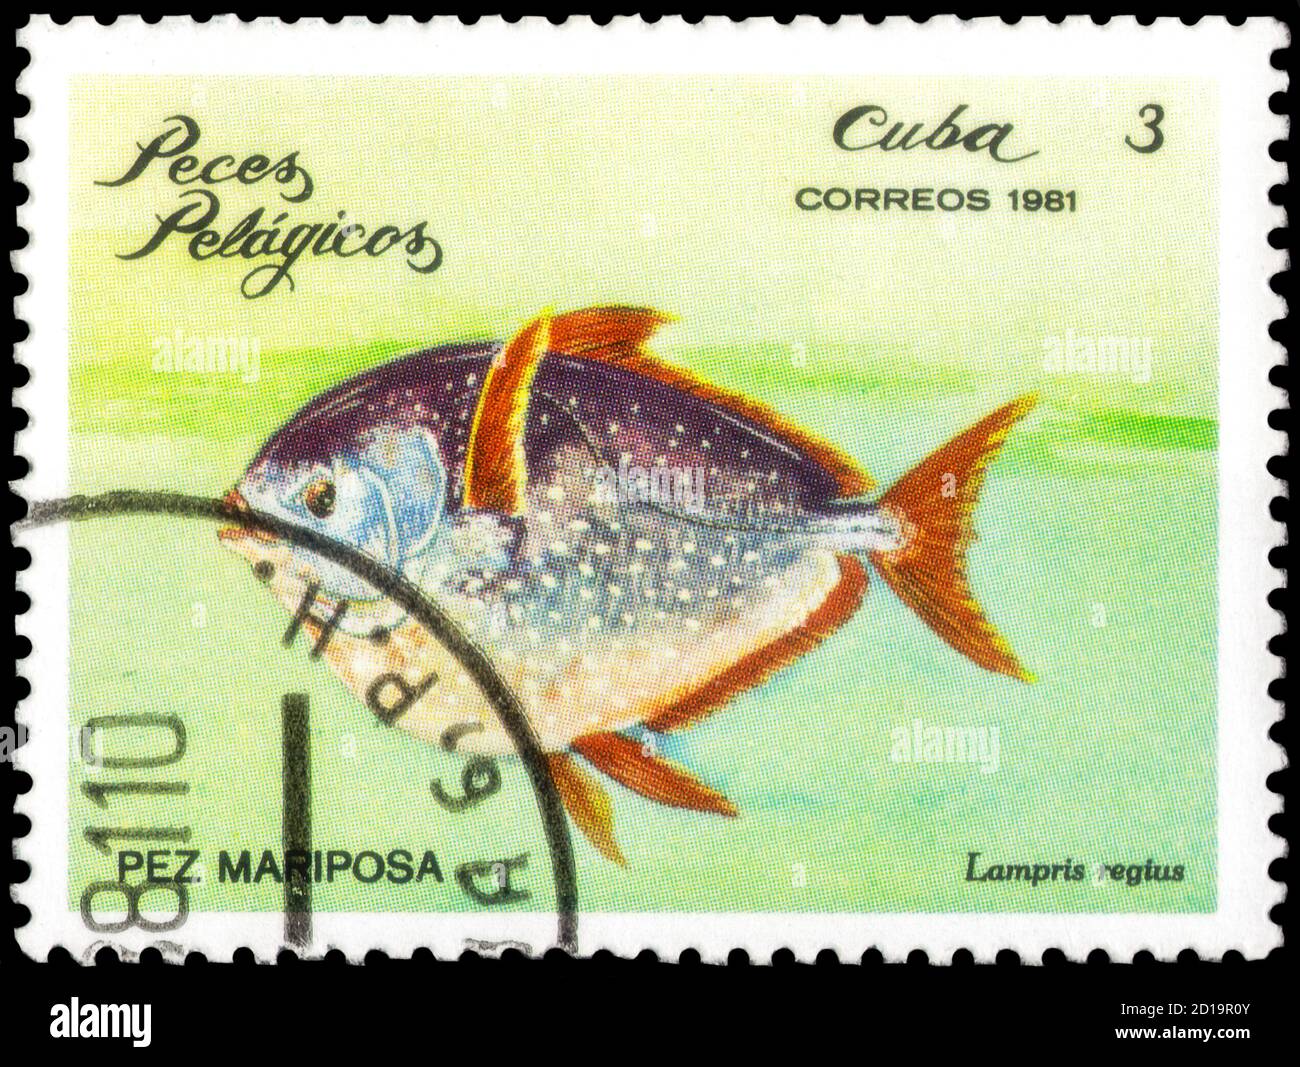 Saint-Pétersbourg, Russie - 18 septembre 2020 : timbre imprimé à Cuba l'image de l'Opah, Lampris regius, vers 1981 Banque D'Images